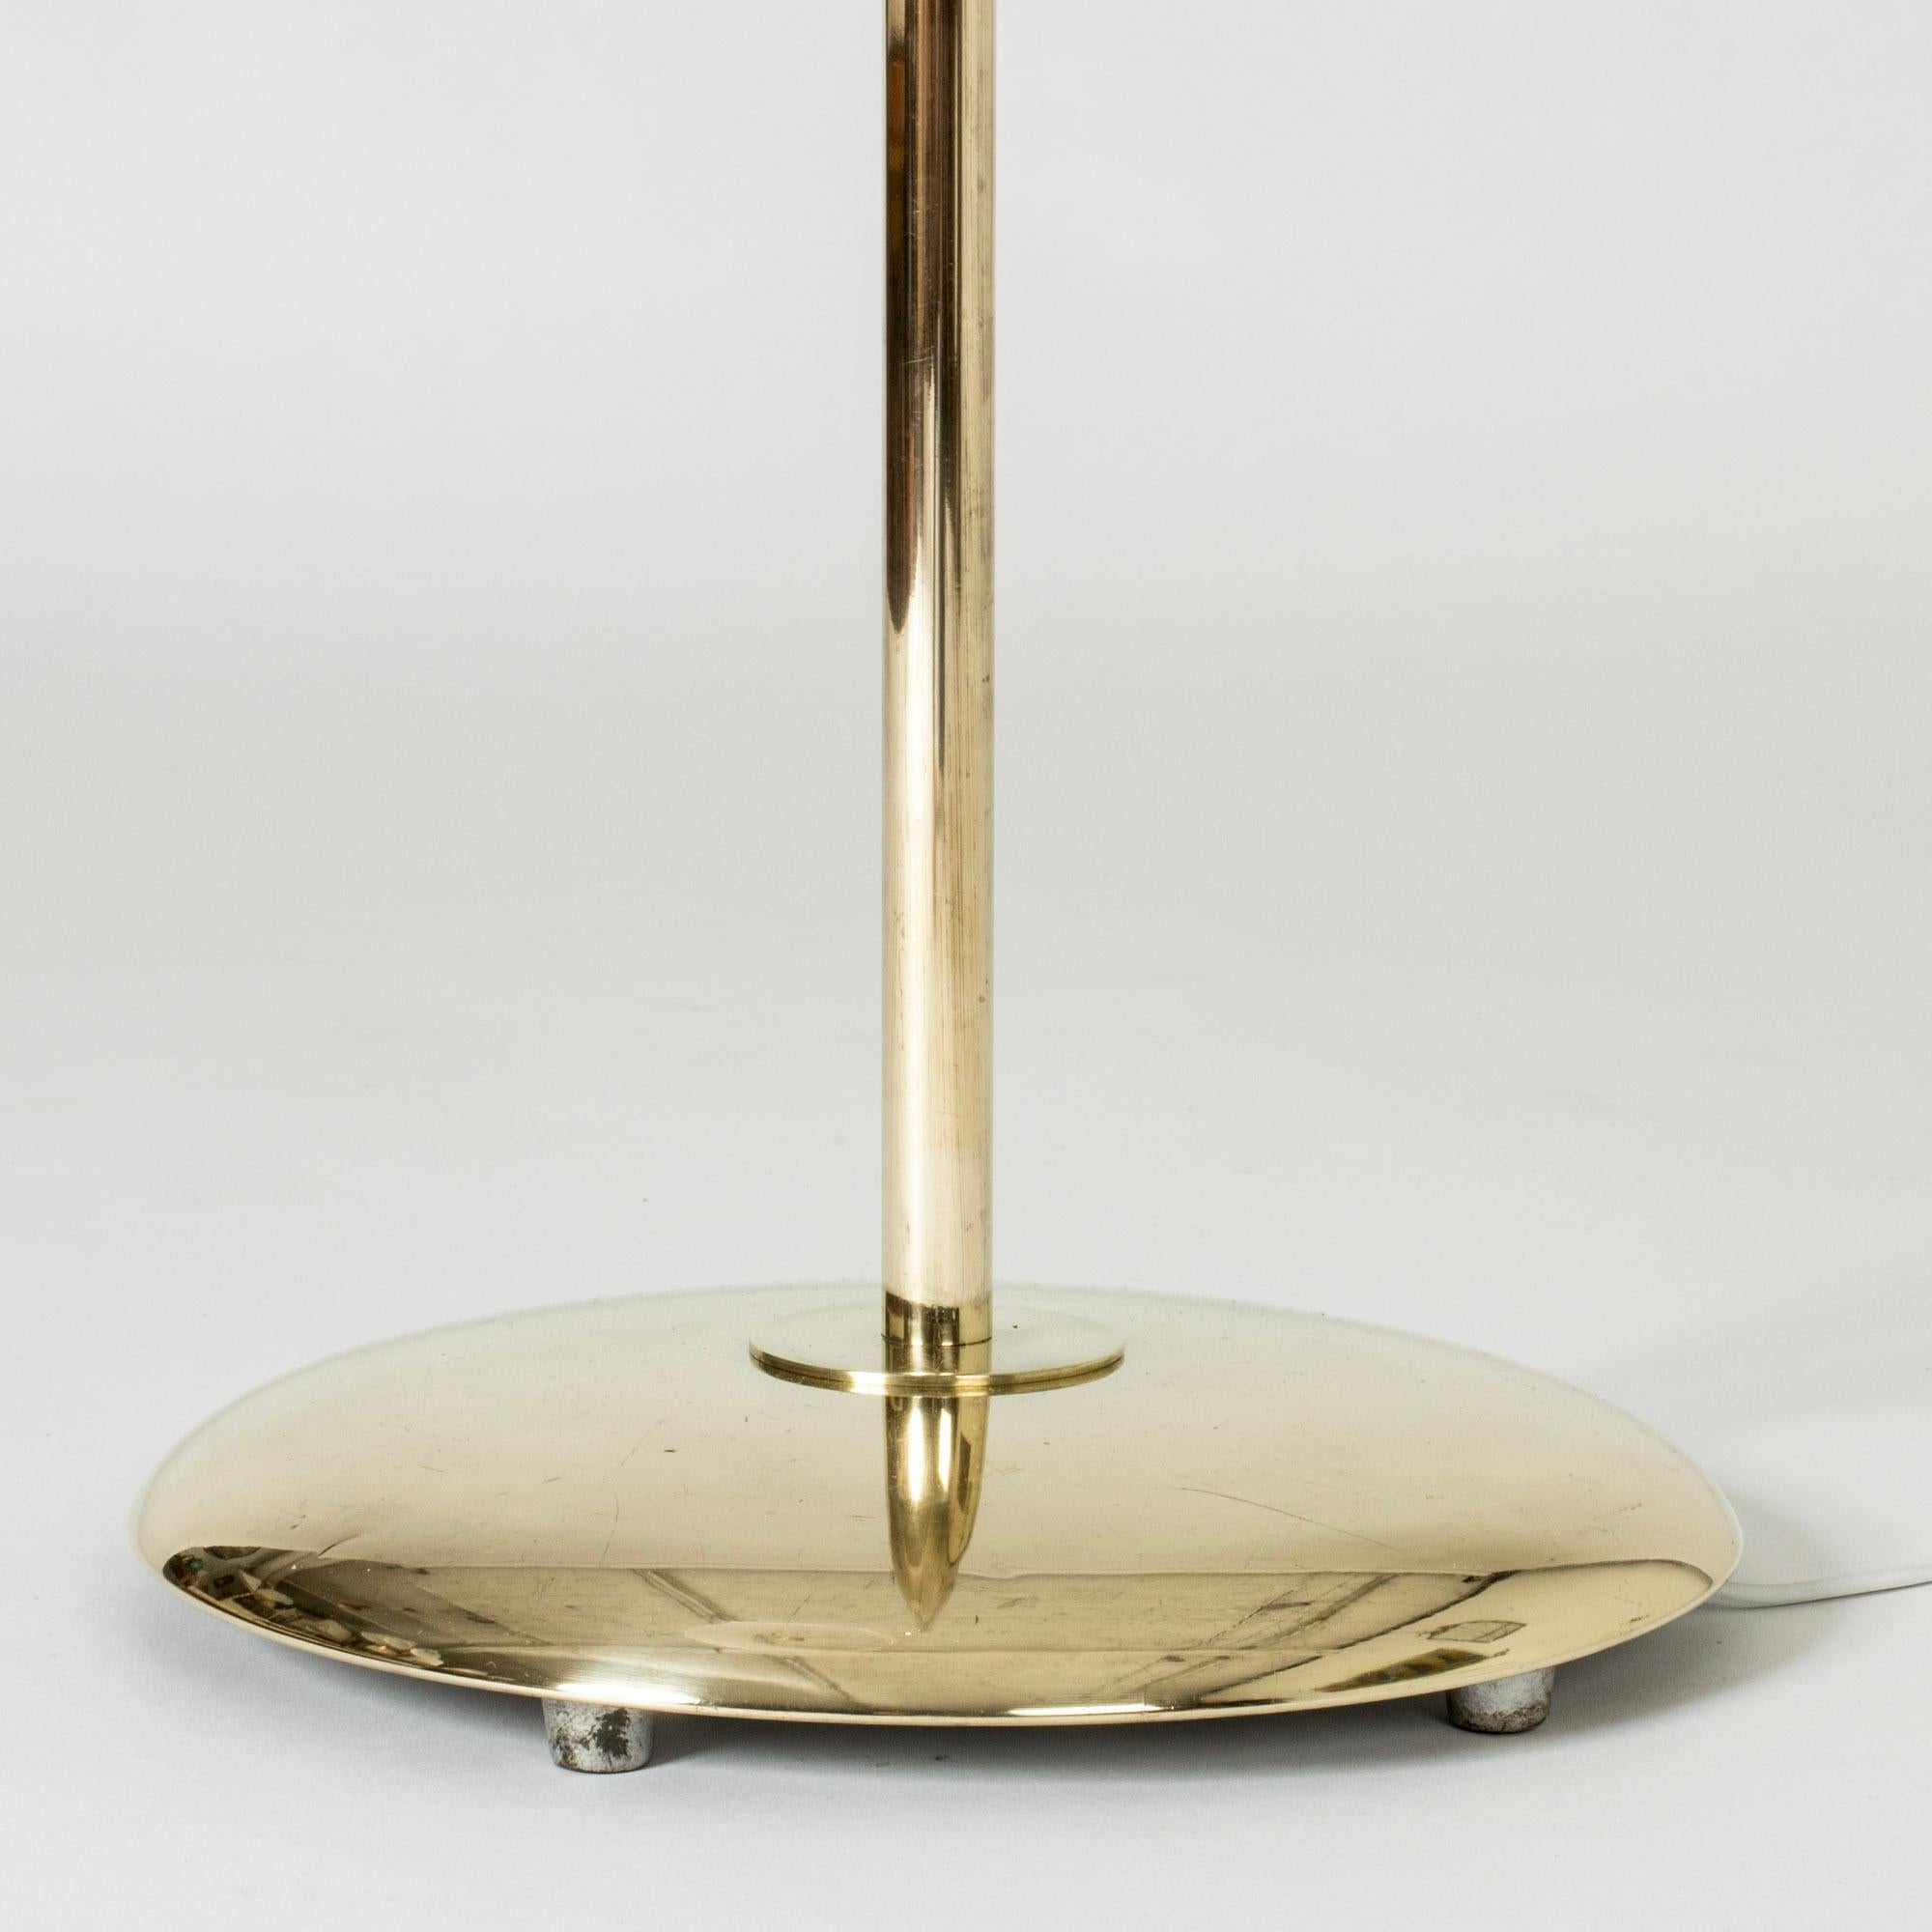 Swedish Scandinavian Midcentury Brass Floor Lamp from Nk, Sweden, 1950s For Sale